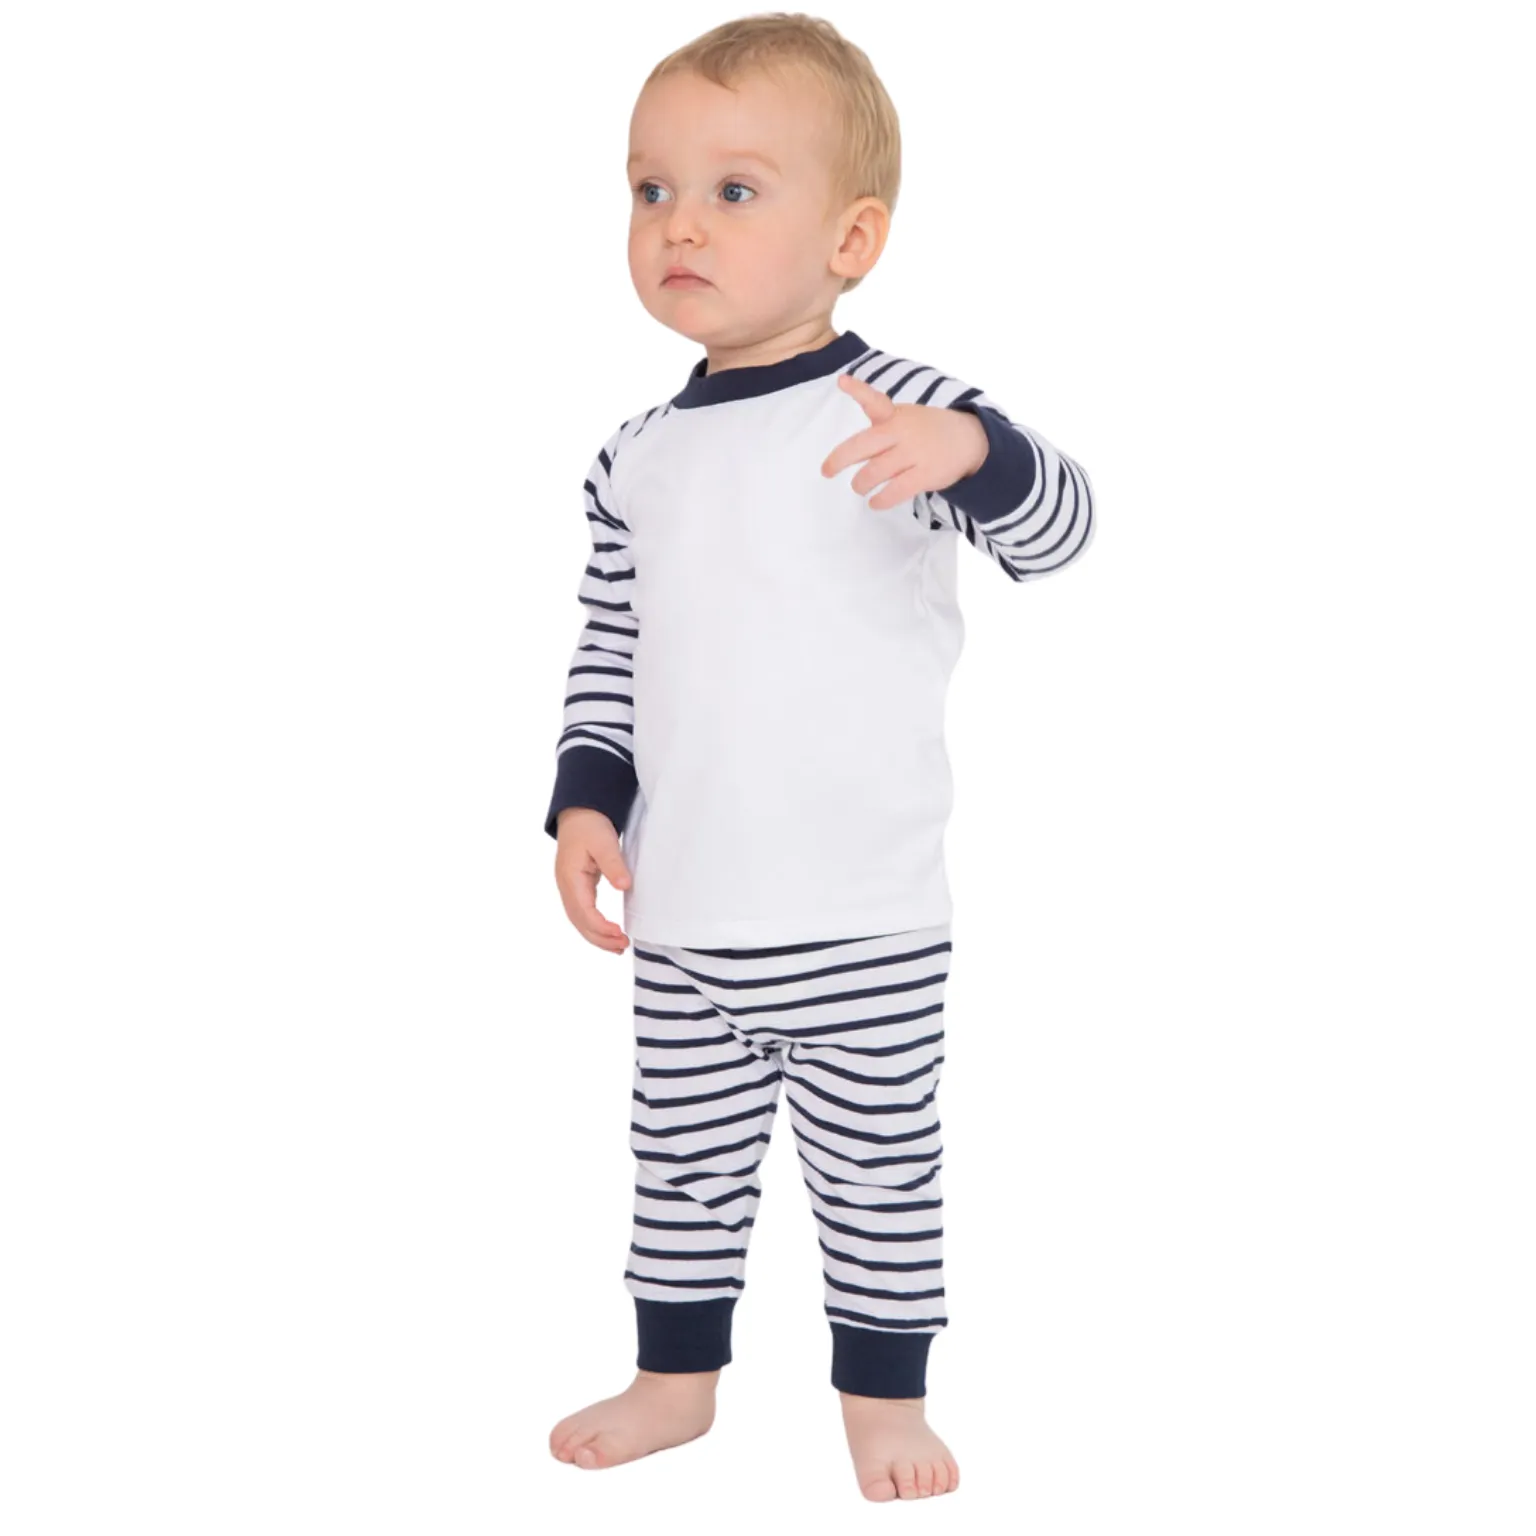 Premium OEM Toddler Pajamas manufacturing service